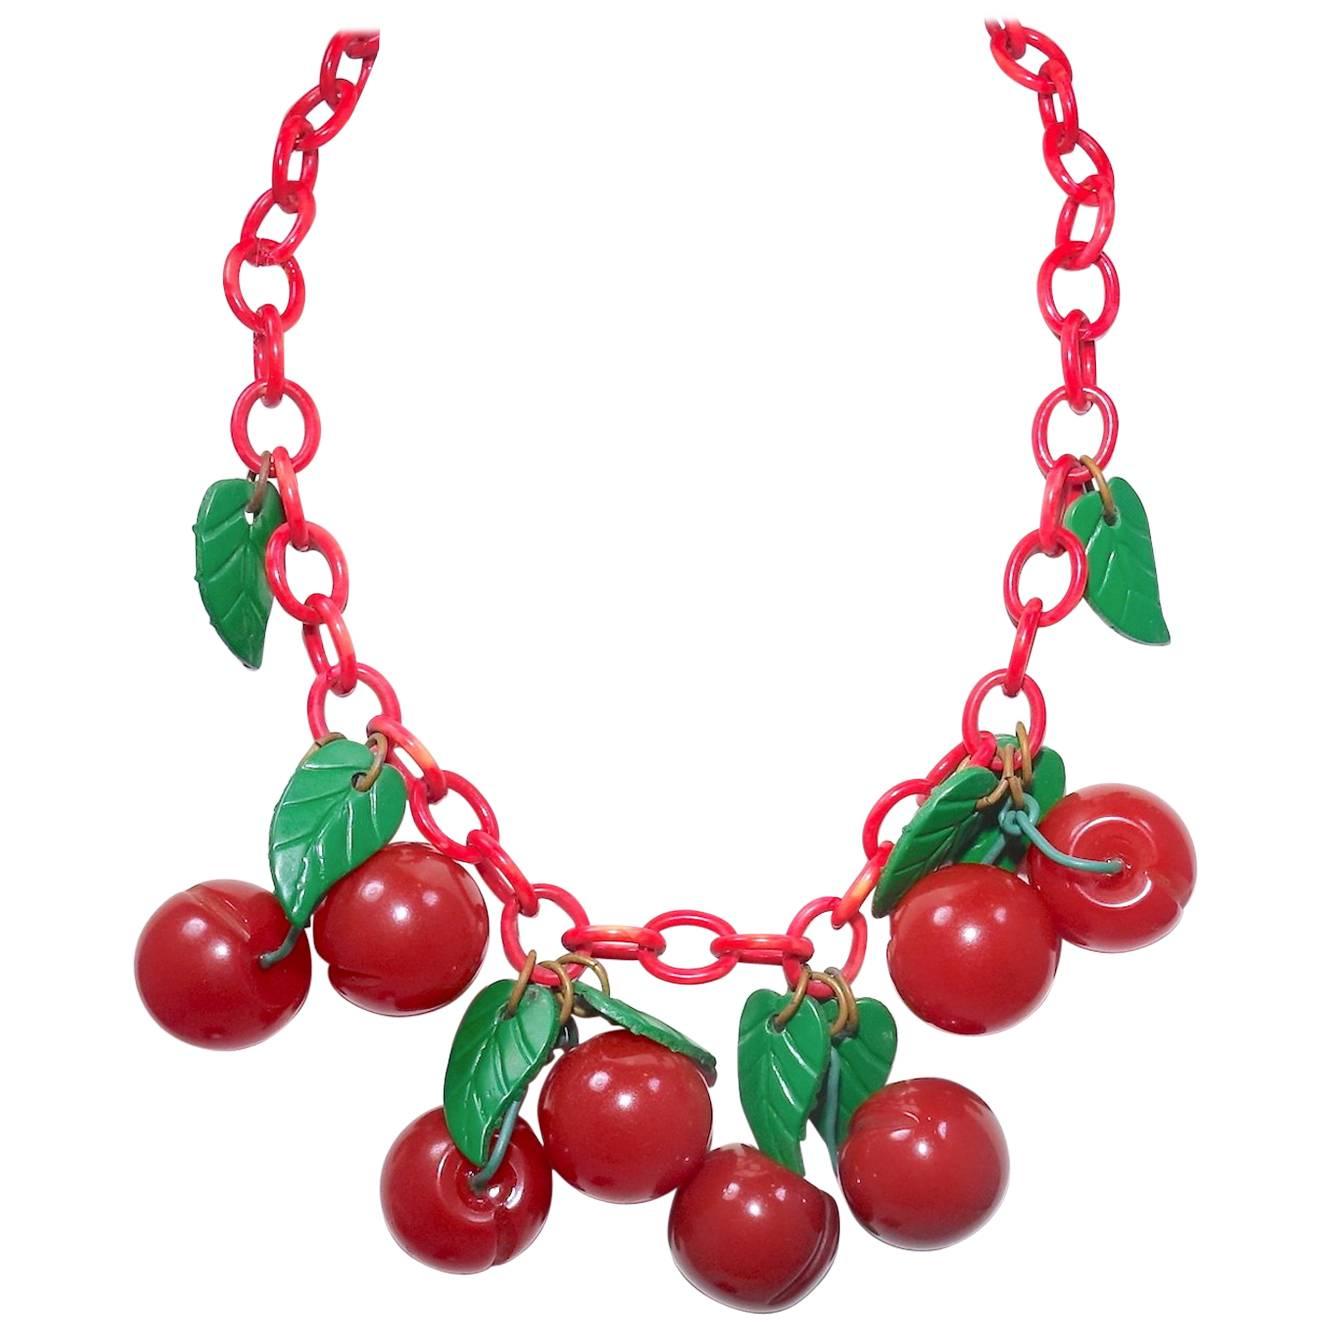 FAMOUS Art Deco 1930s Bakelite Cherries Necklace